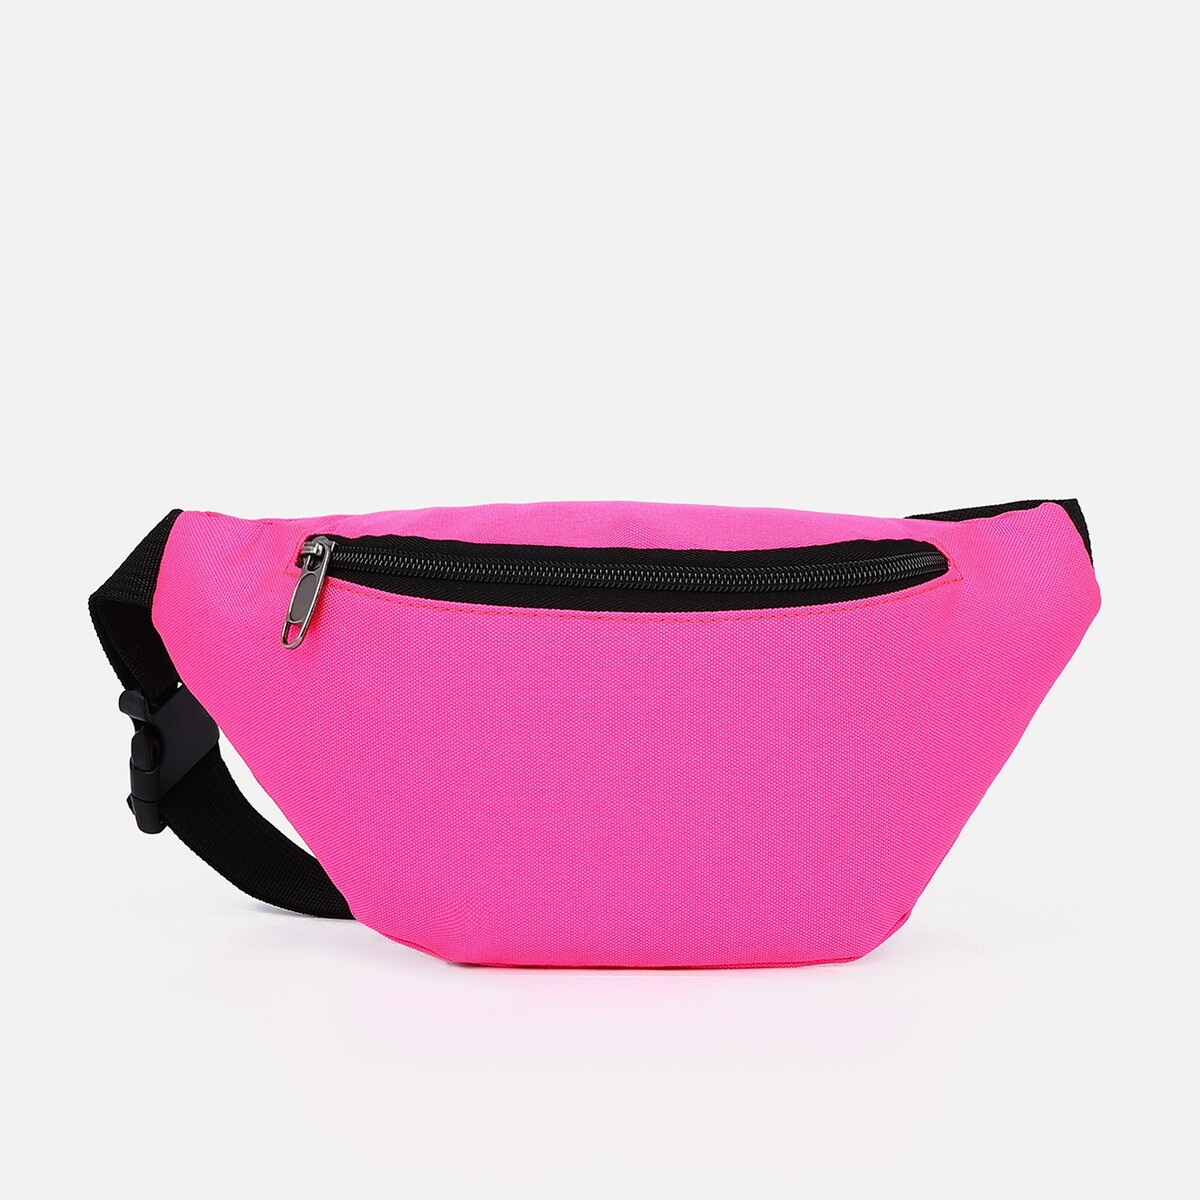 Поясная сумка на молнии, наружный карман, цвет розовый сумка поясная на молнии наружный карман разъем для usb фиолетовый разно ный